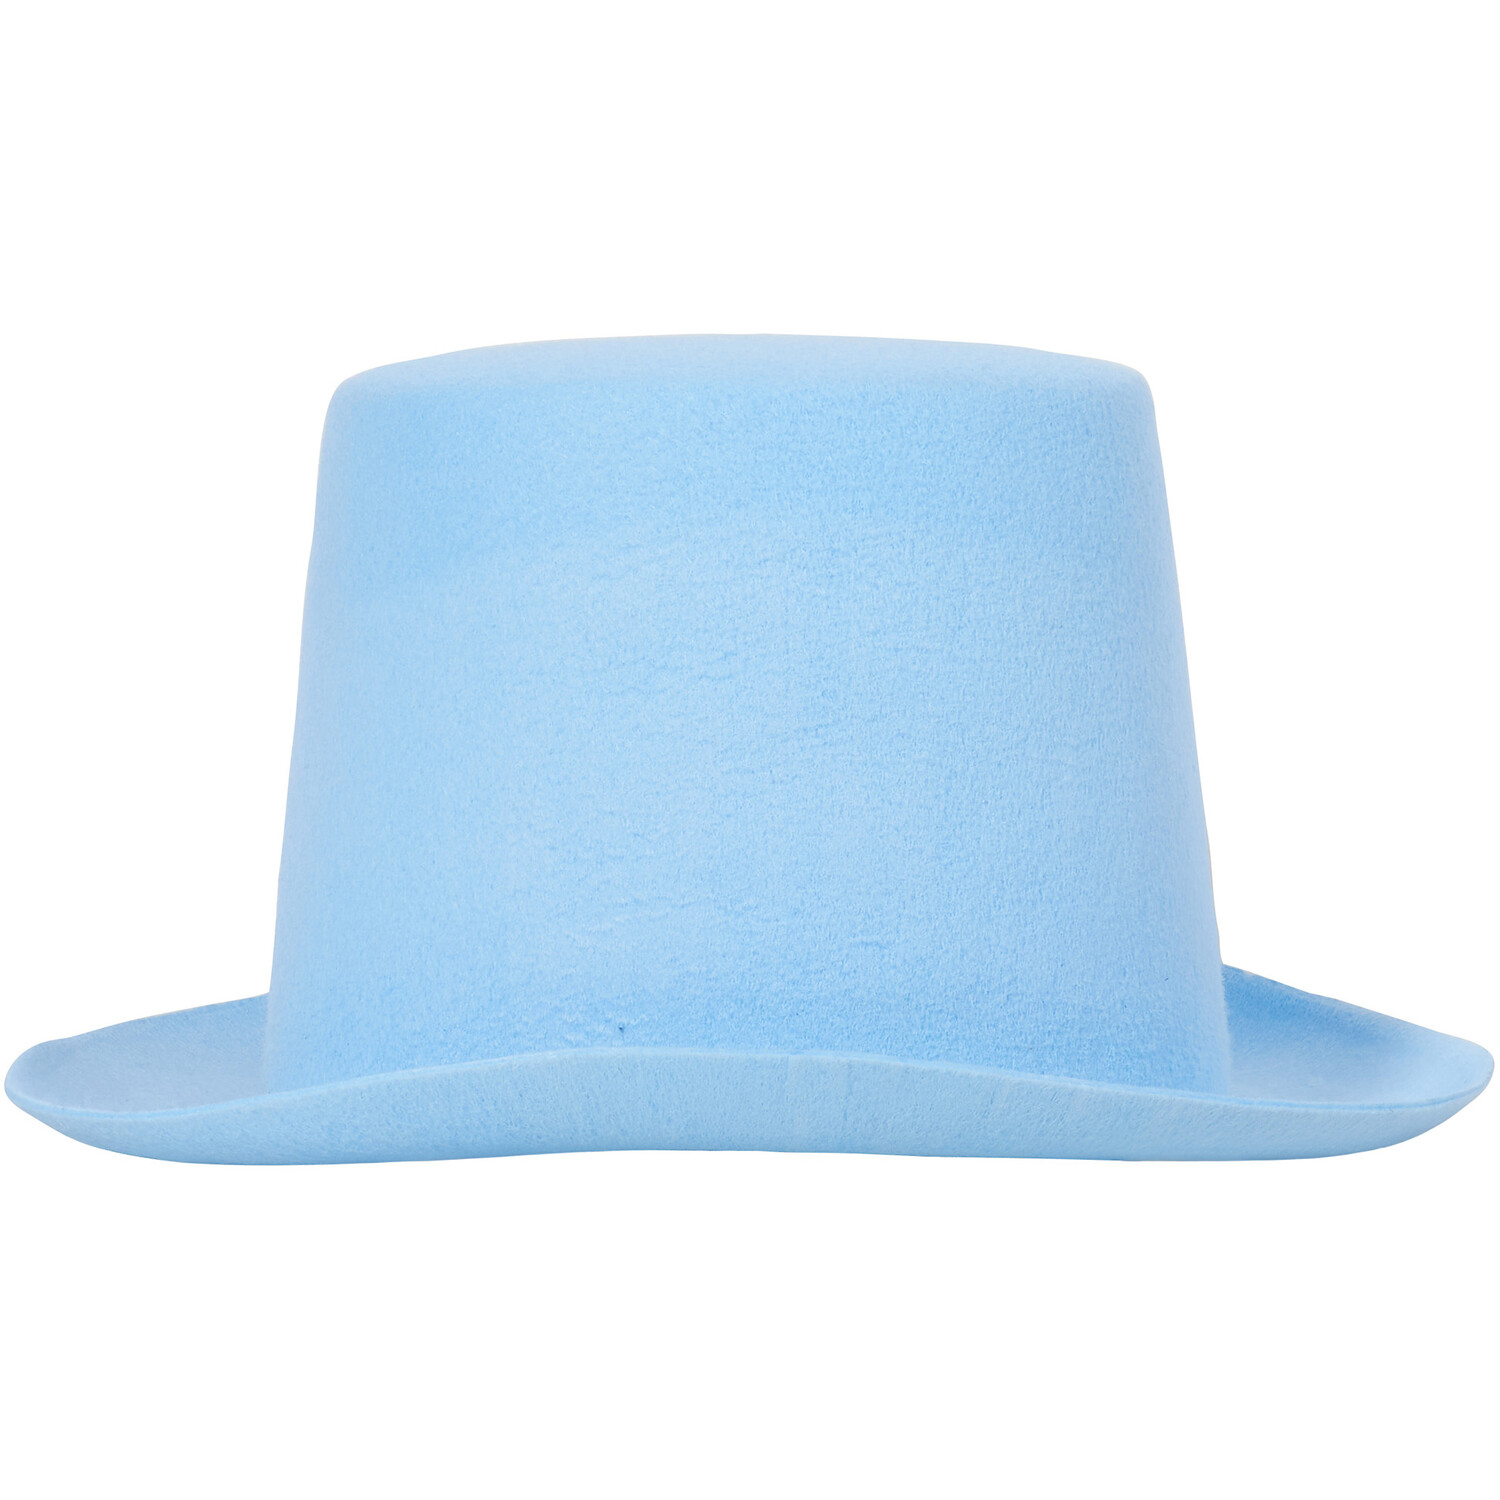 Easter Top Hat - Blue Image 2